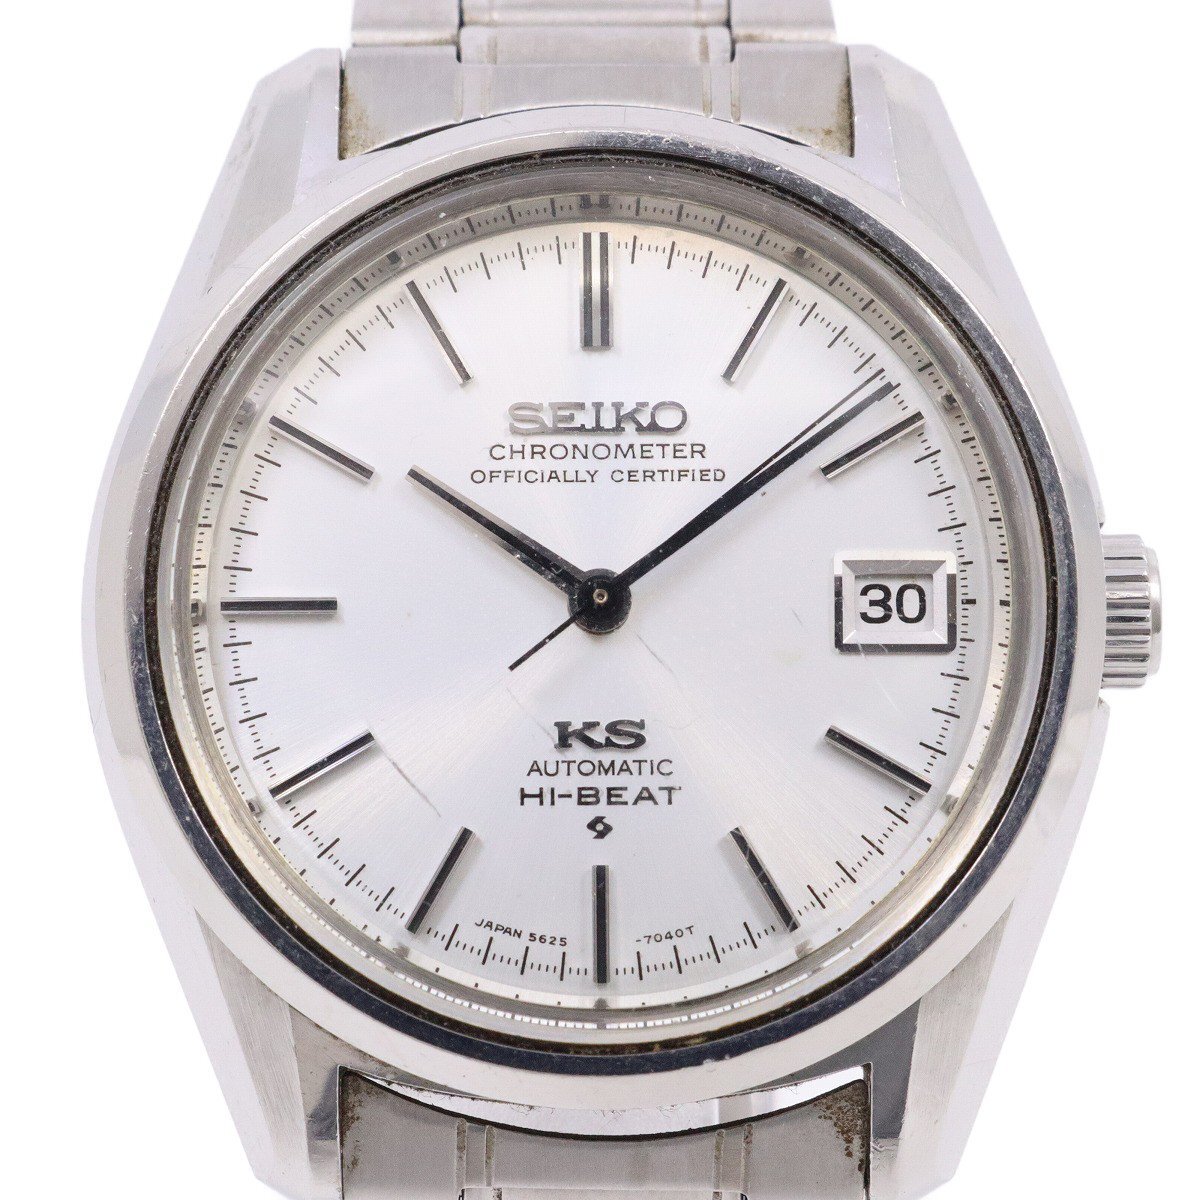 【訳あり品】SEIKO キングセイコー 56KS クロノメーター自動巻き 1972年製 メンズ 腕時計 社外ベルト 5625-7040【いおき質店】の画像1